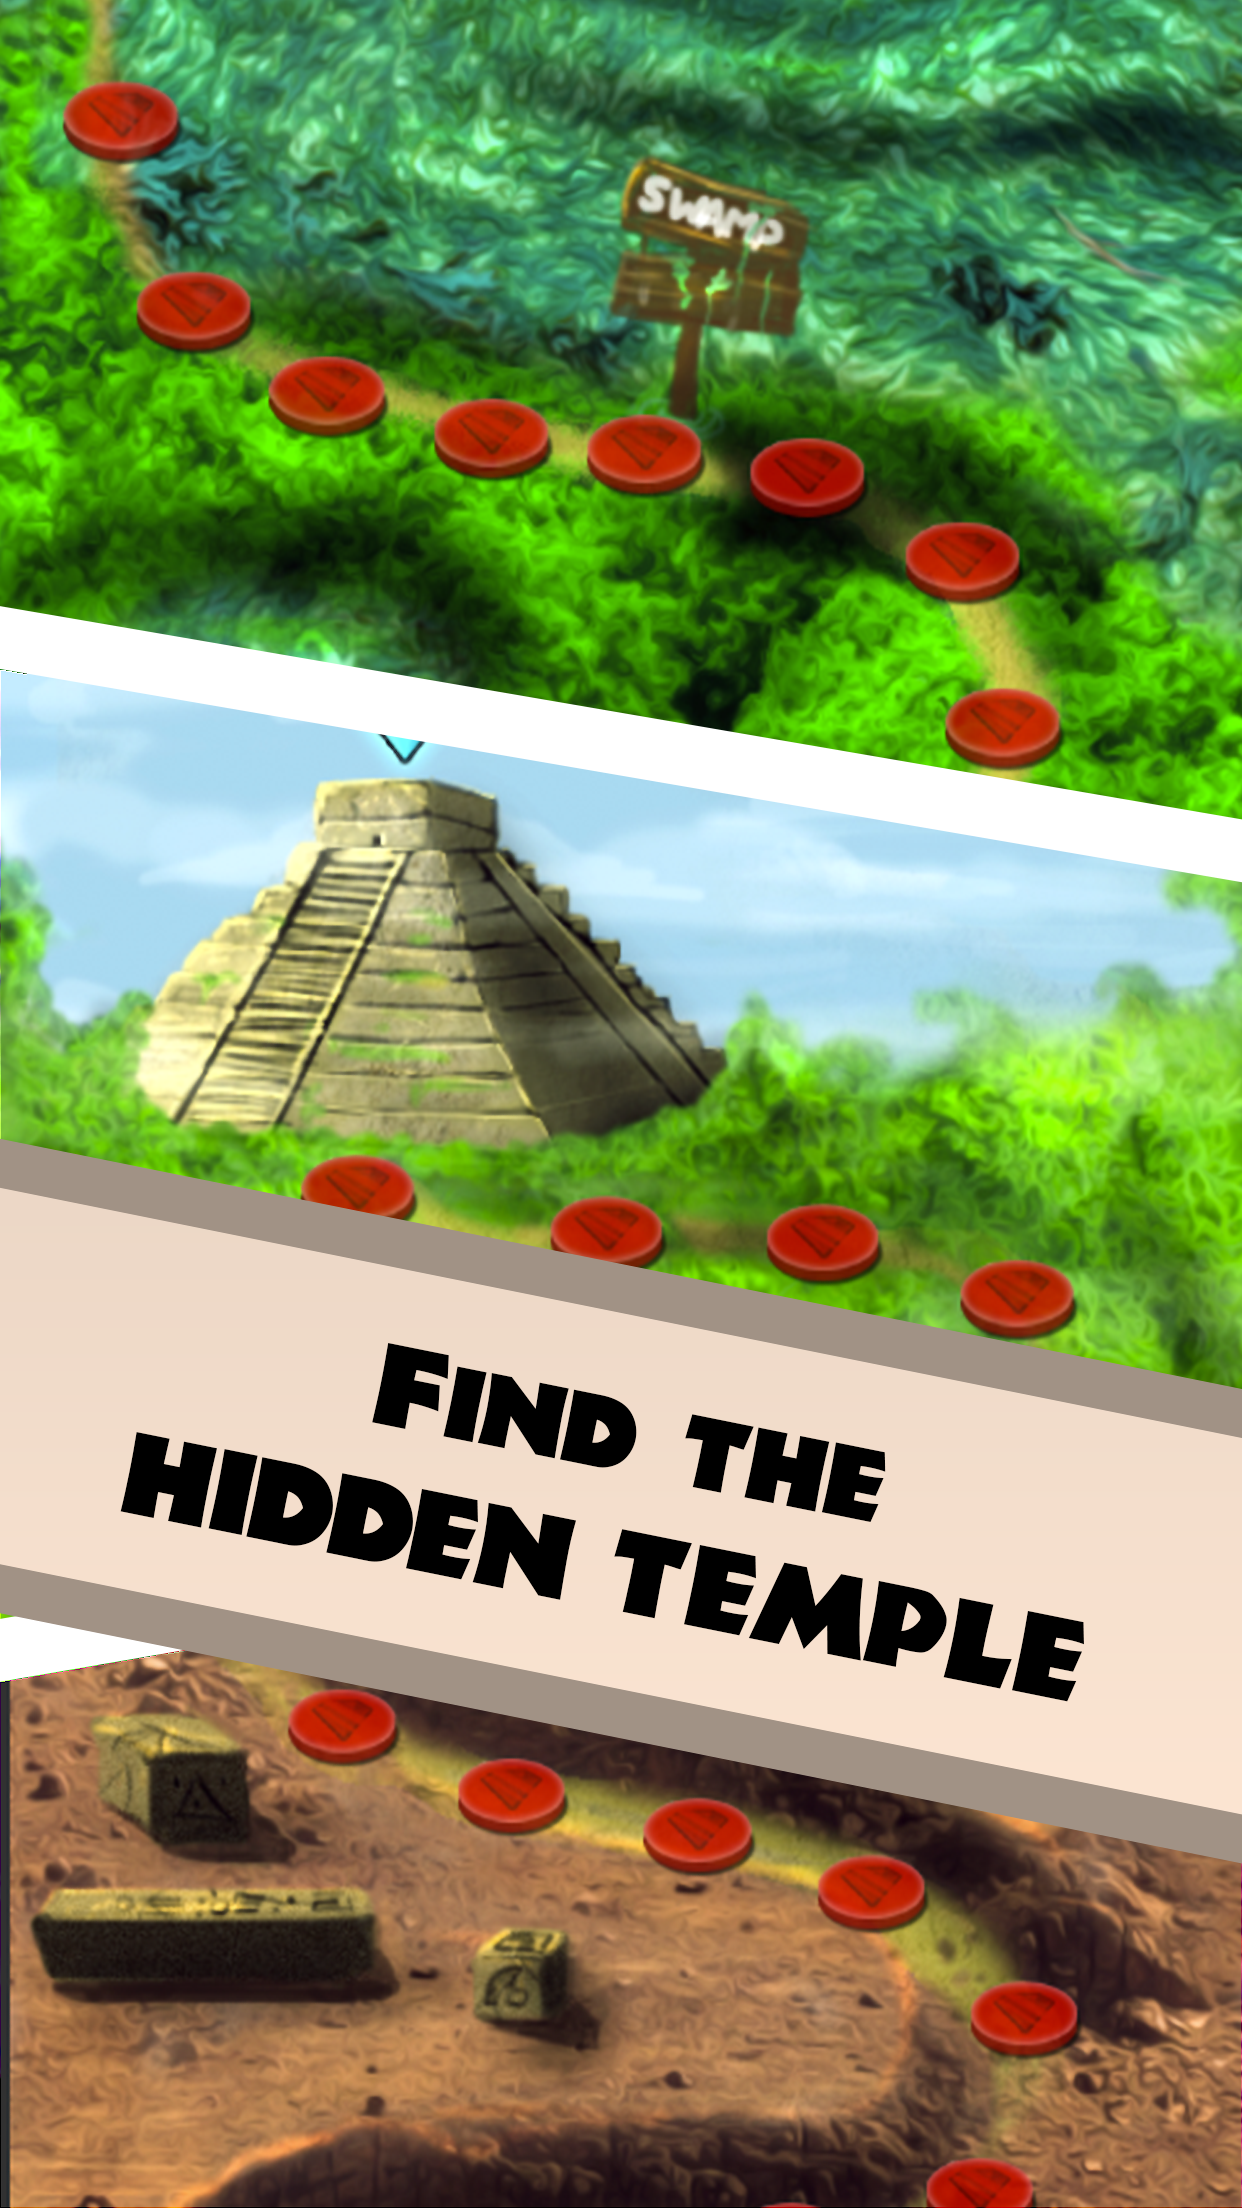 Aztec Temple Quest - Match 3